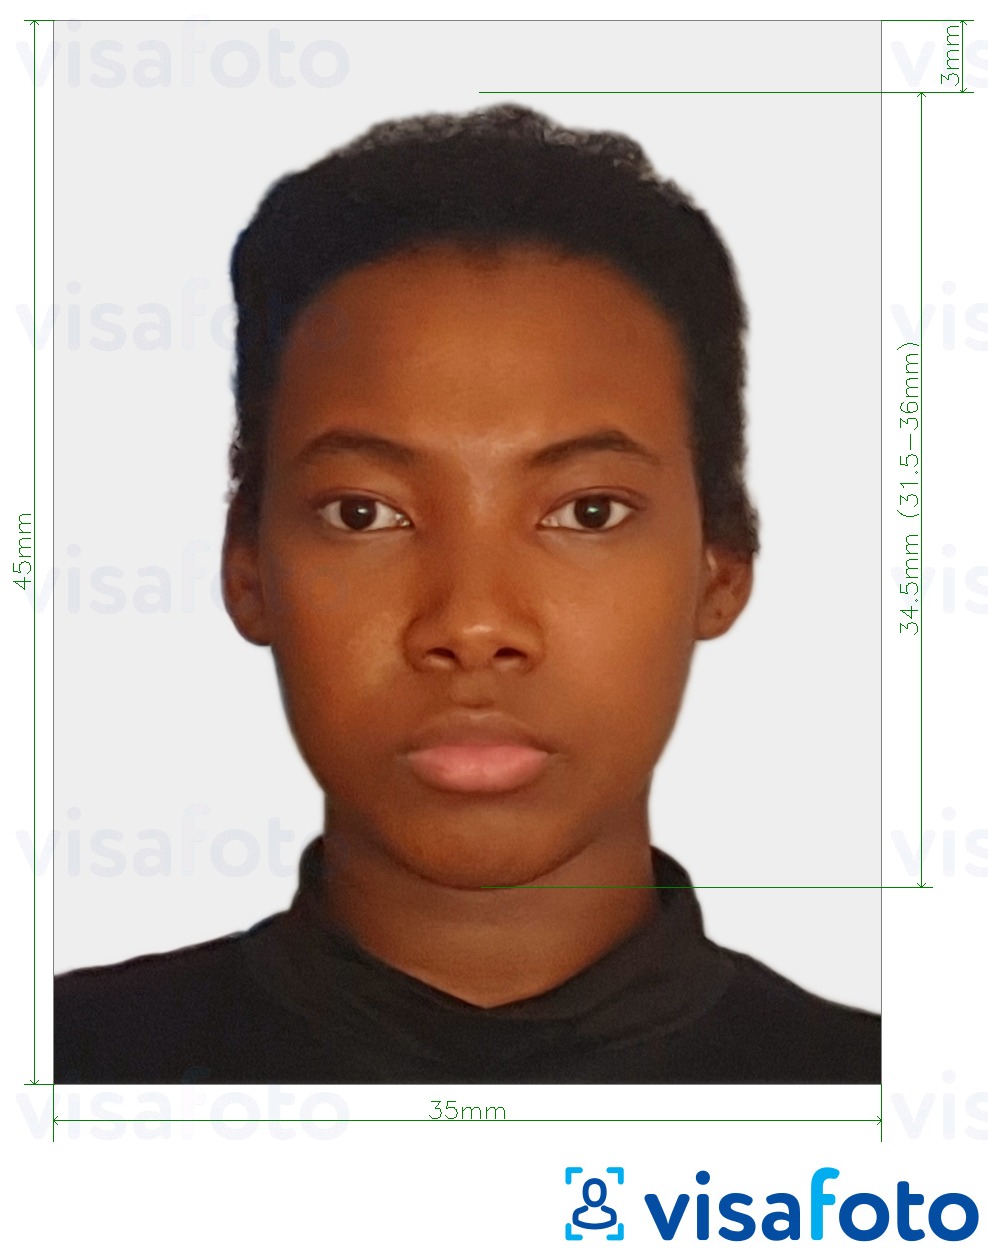 Exemplu de fotografie pentru Suriname visa online cu aceeași dimensiune indicată